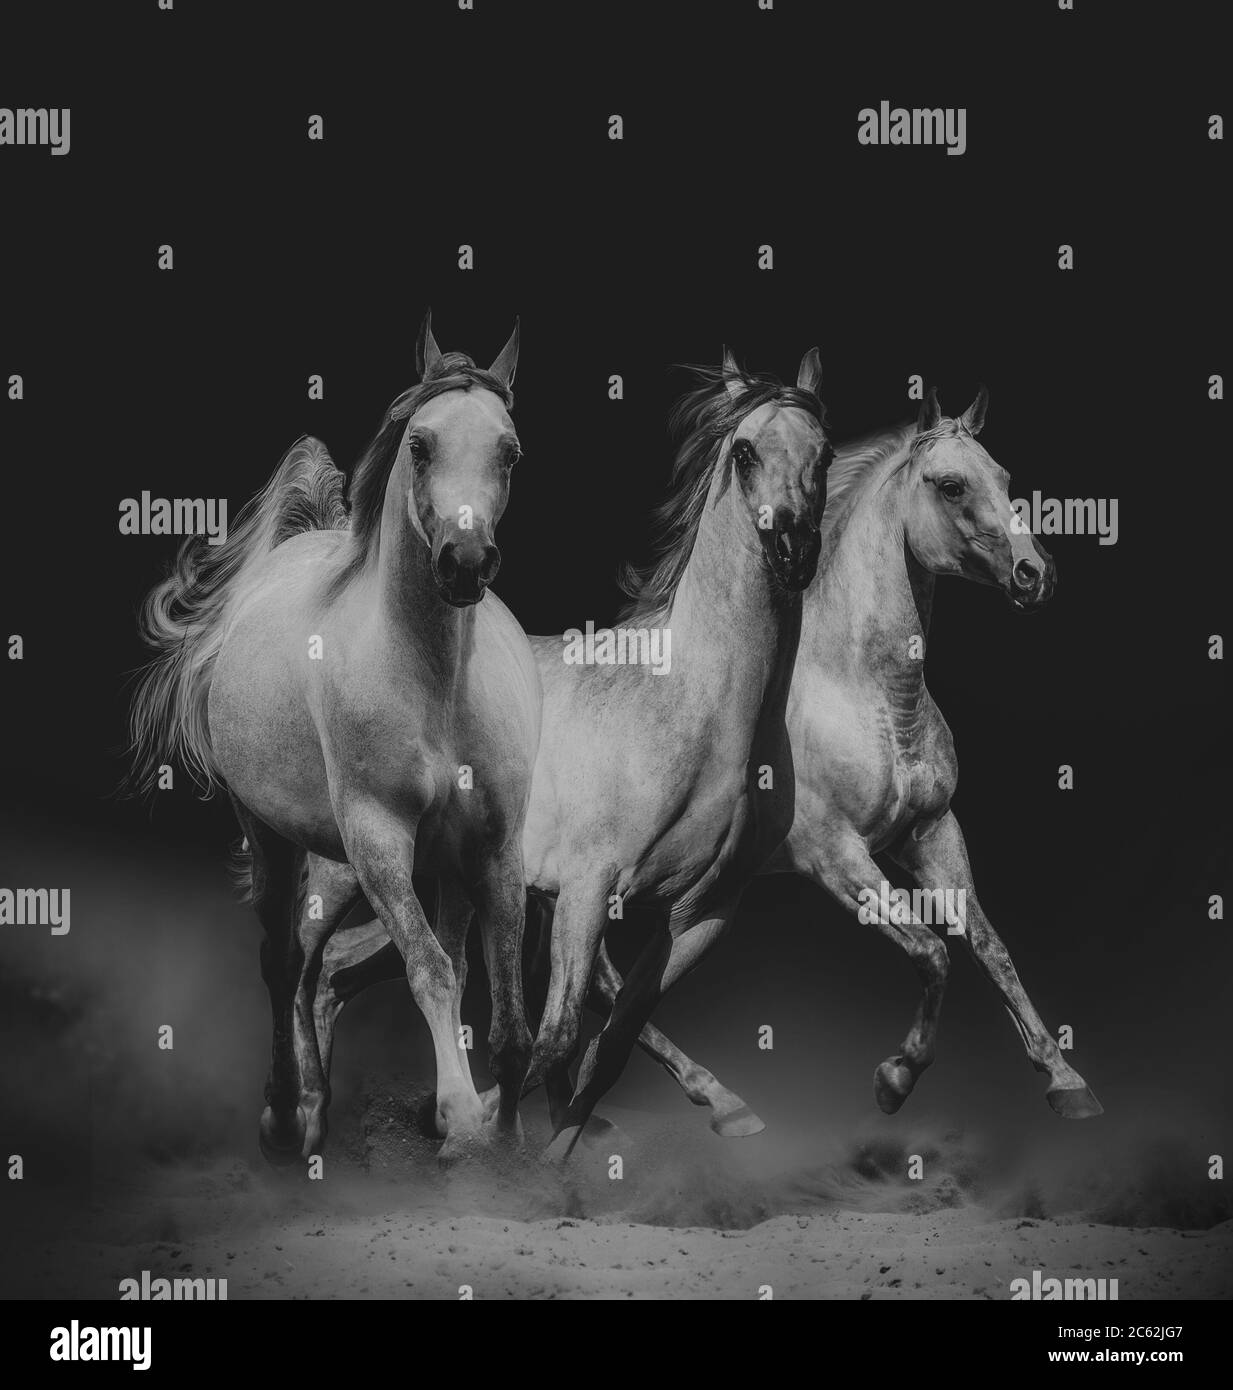 De magnifiques chevaux arabes dans la nature sombre Banque D'Images